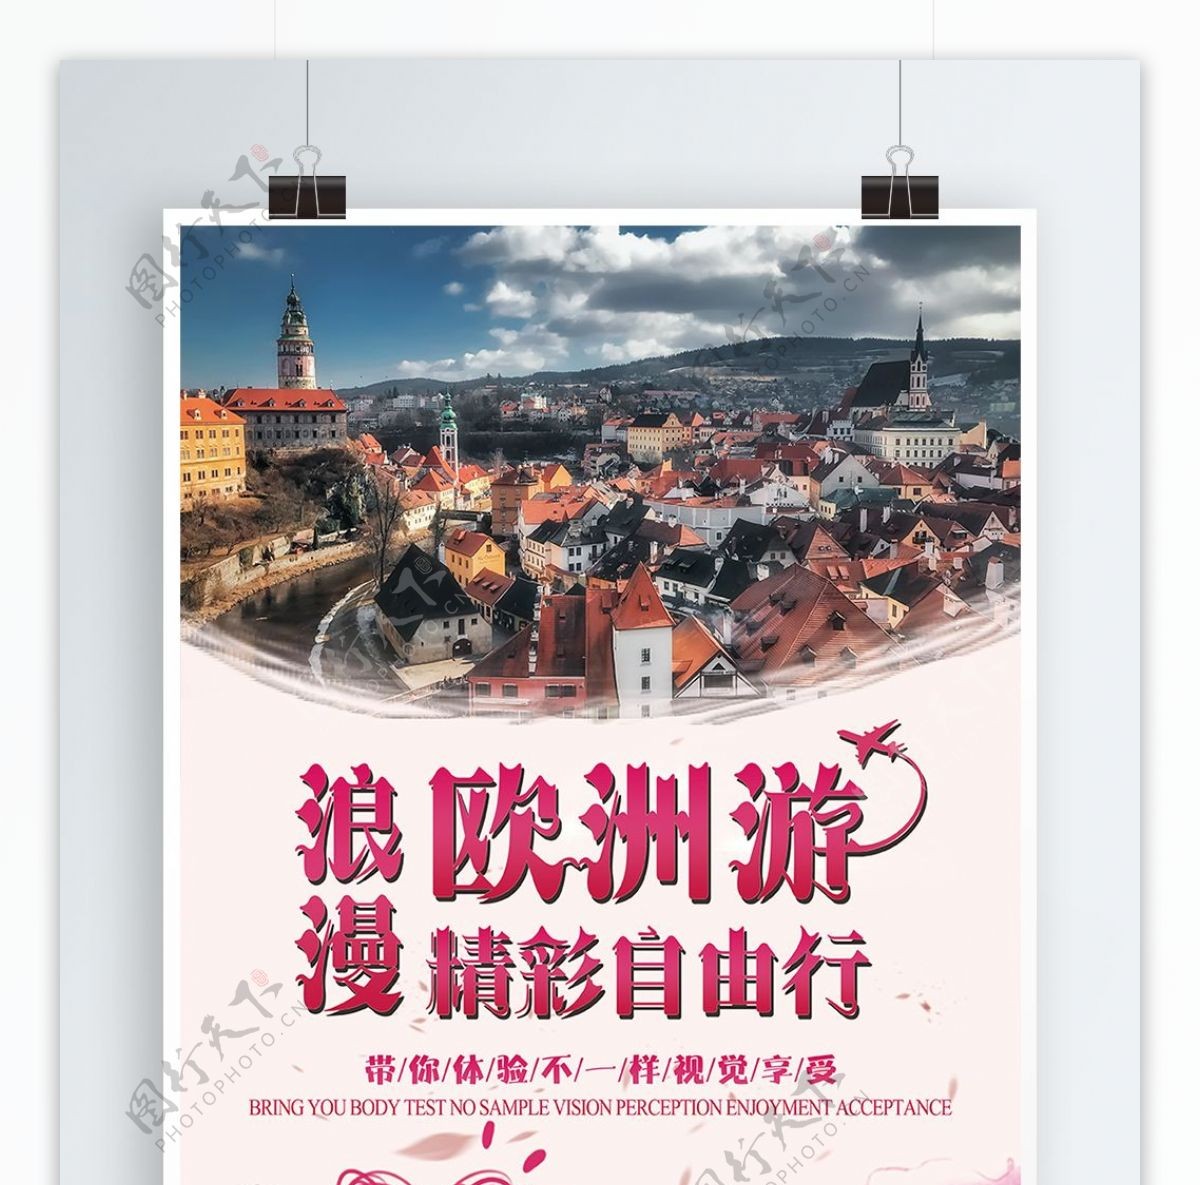 欧洲游游旅行社精品旅游服务宣传海报模板